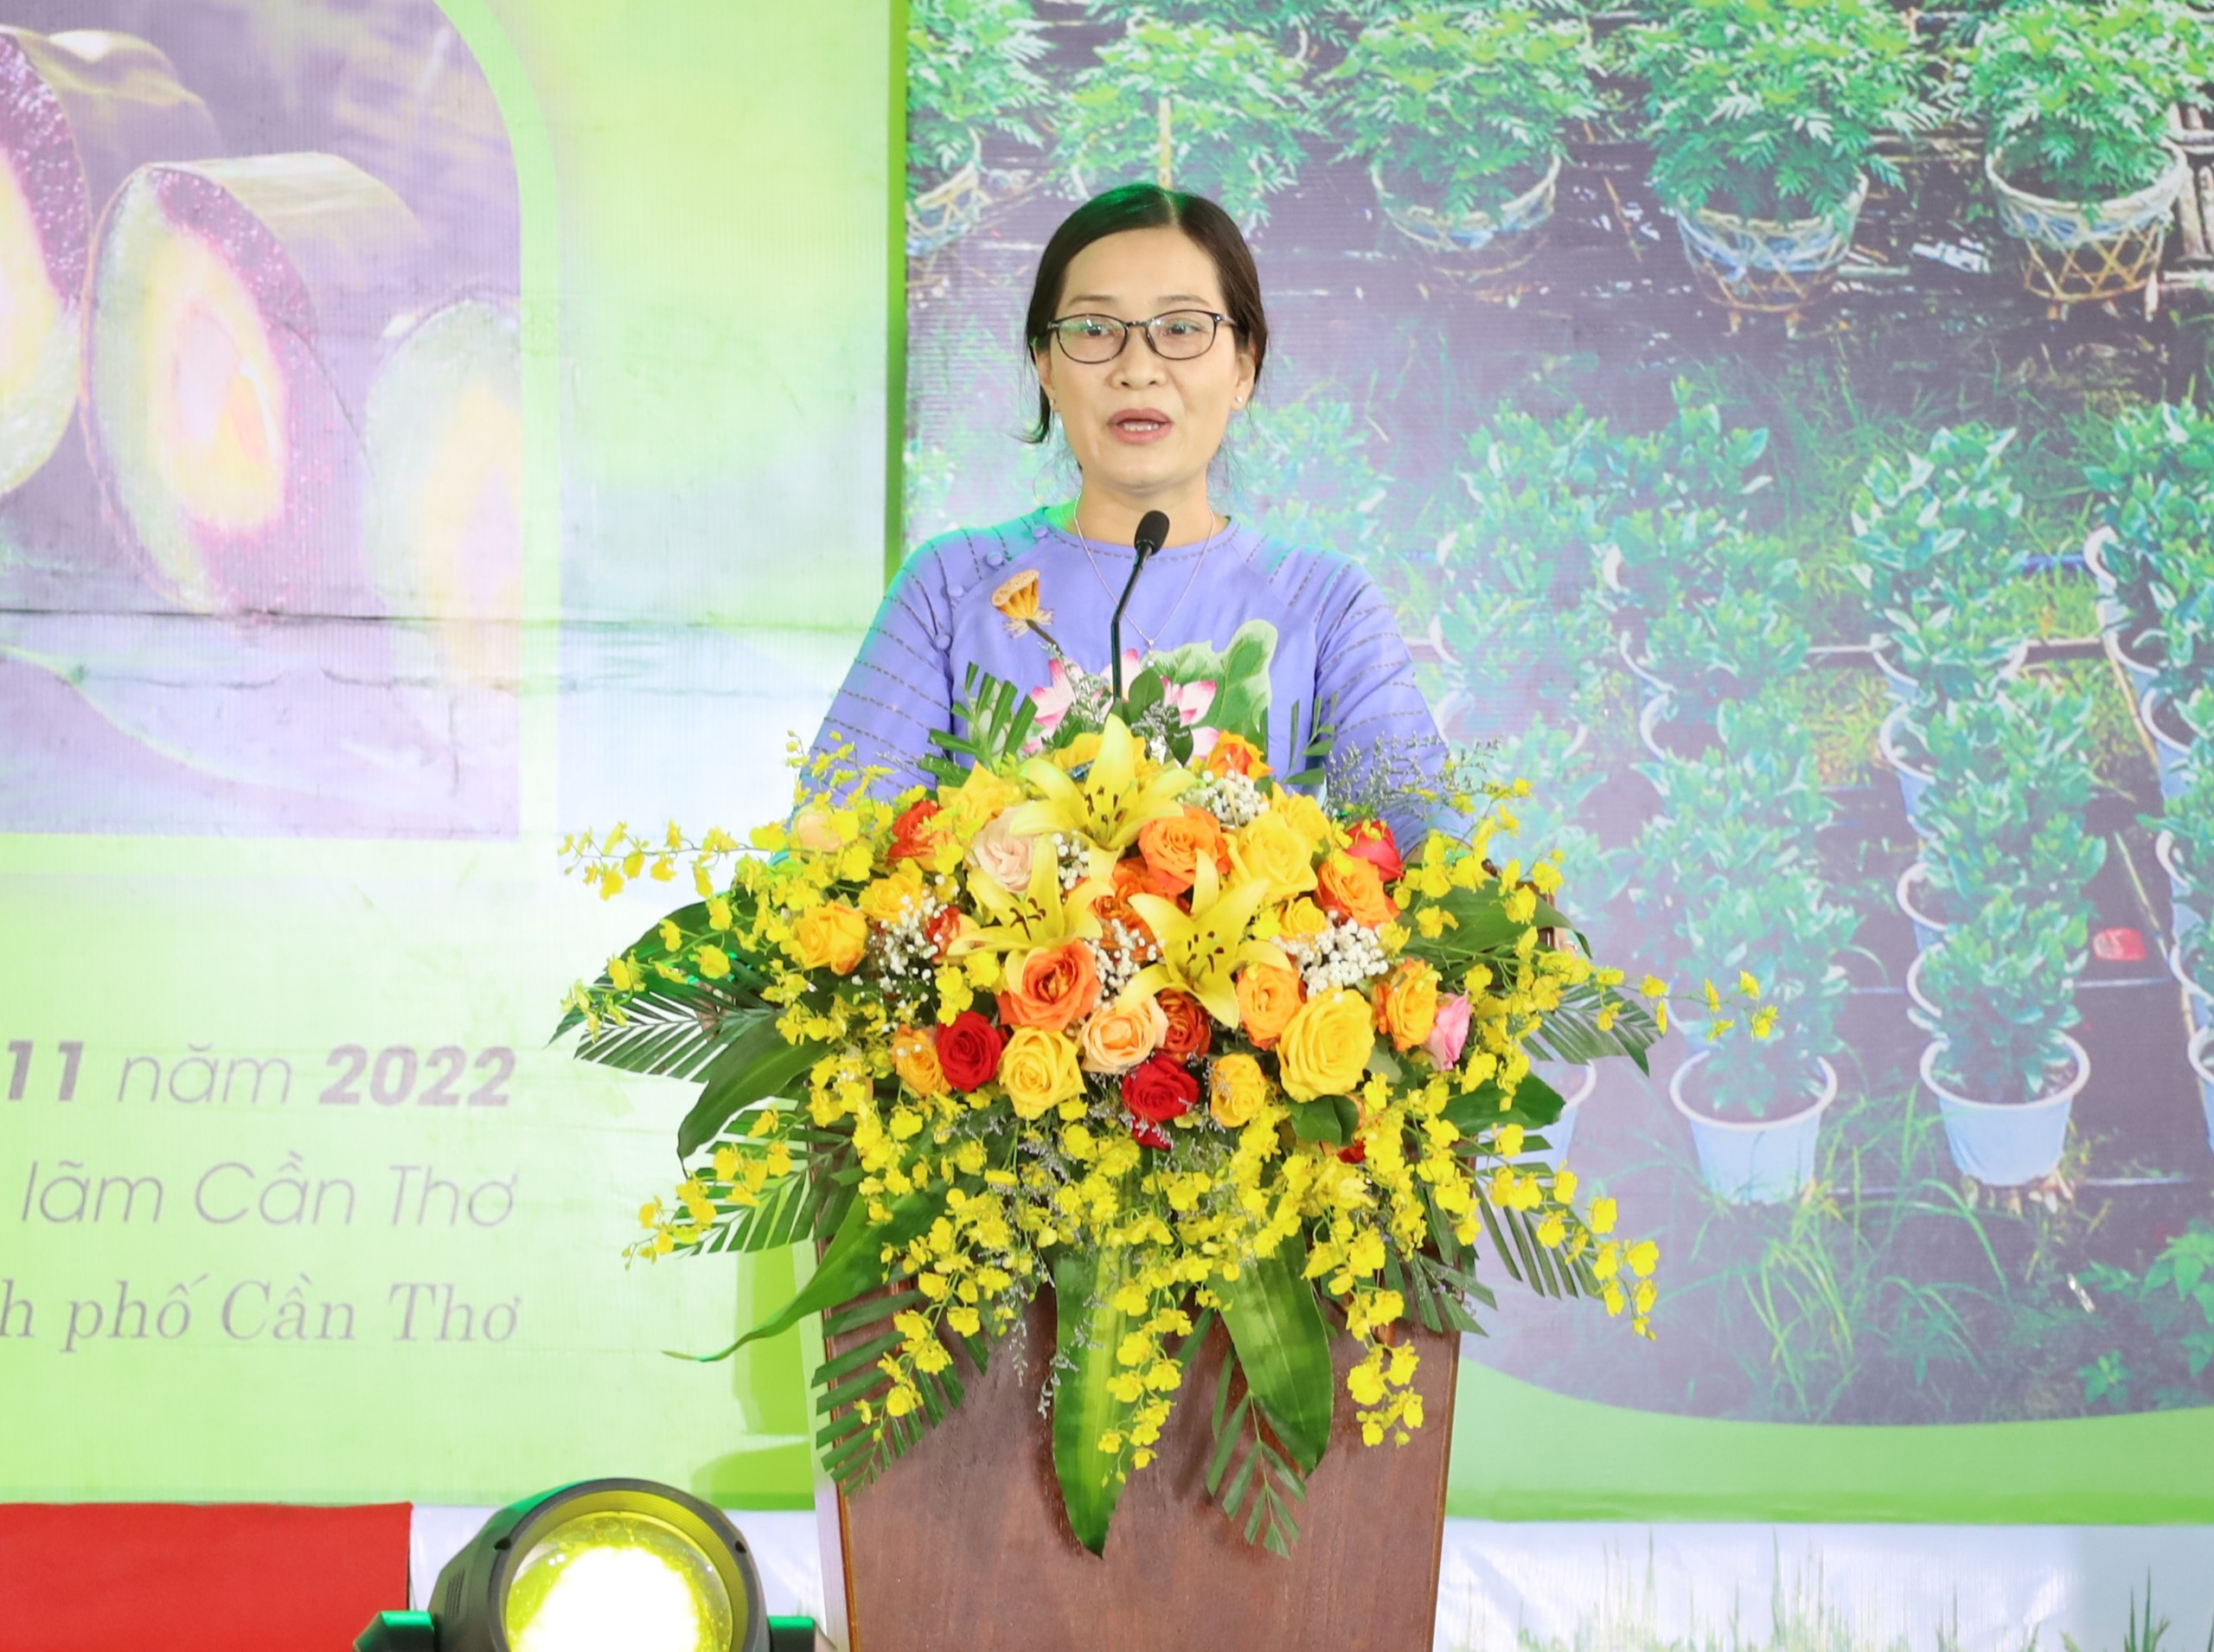 Bà Nguyễn Thị Kiều Duyên - Giám đốc Trung tâm Xúc tiến Đầu tư - Thương mại và Hội chợ triển lãm Cần Thơ phát biểu khai mạc ngày hội.